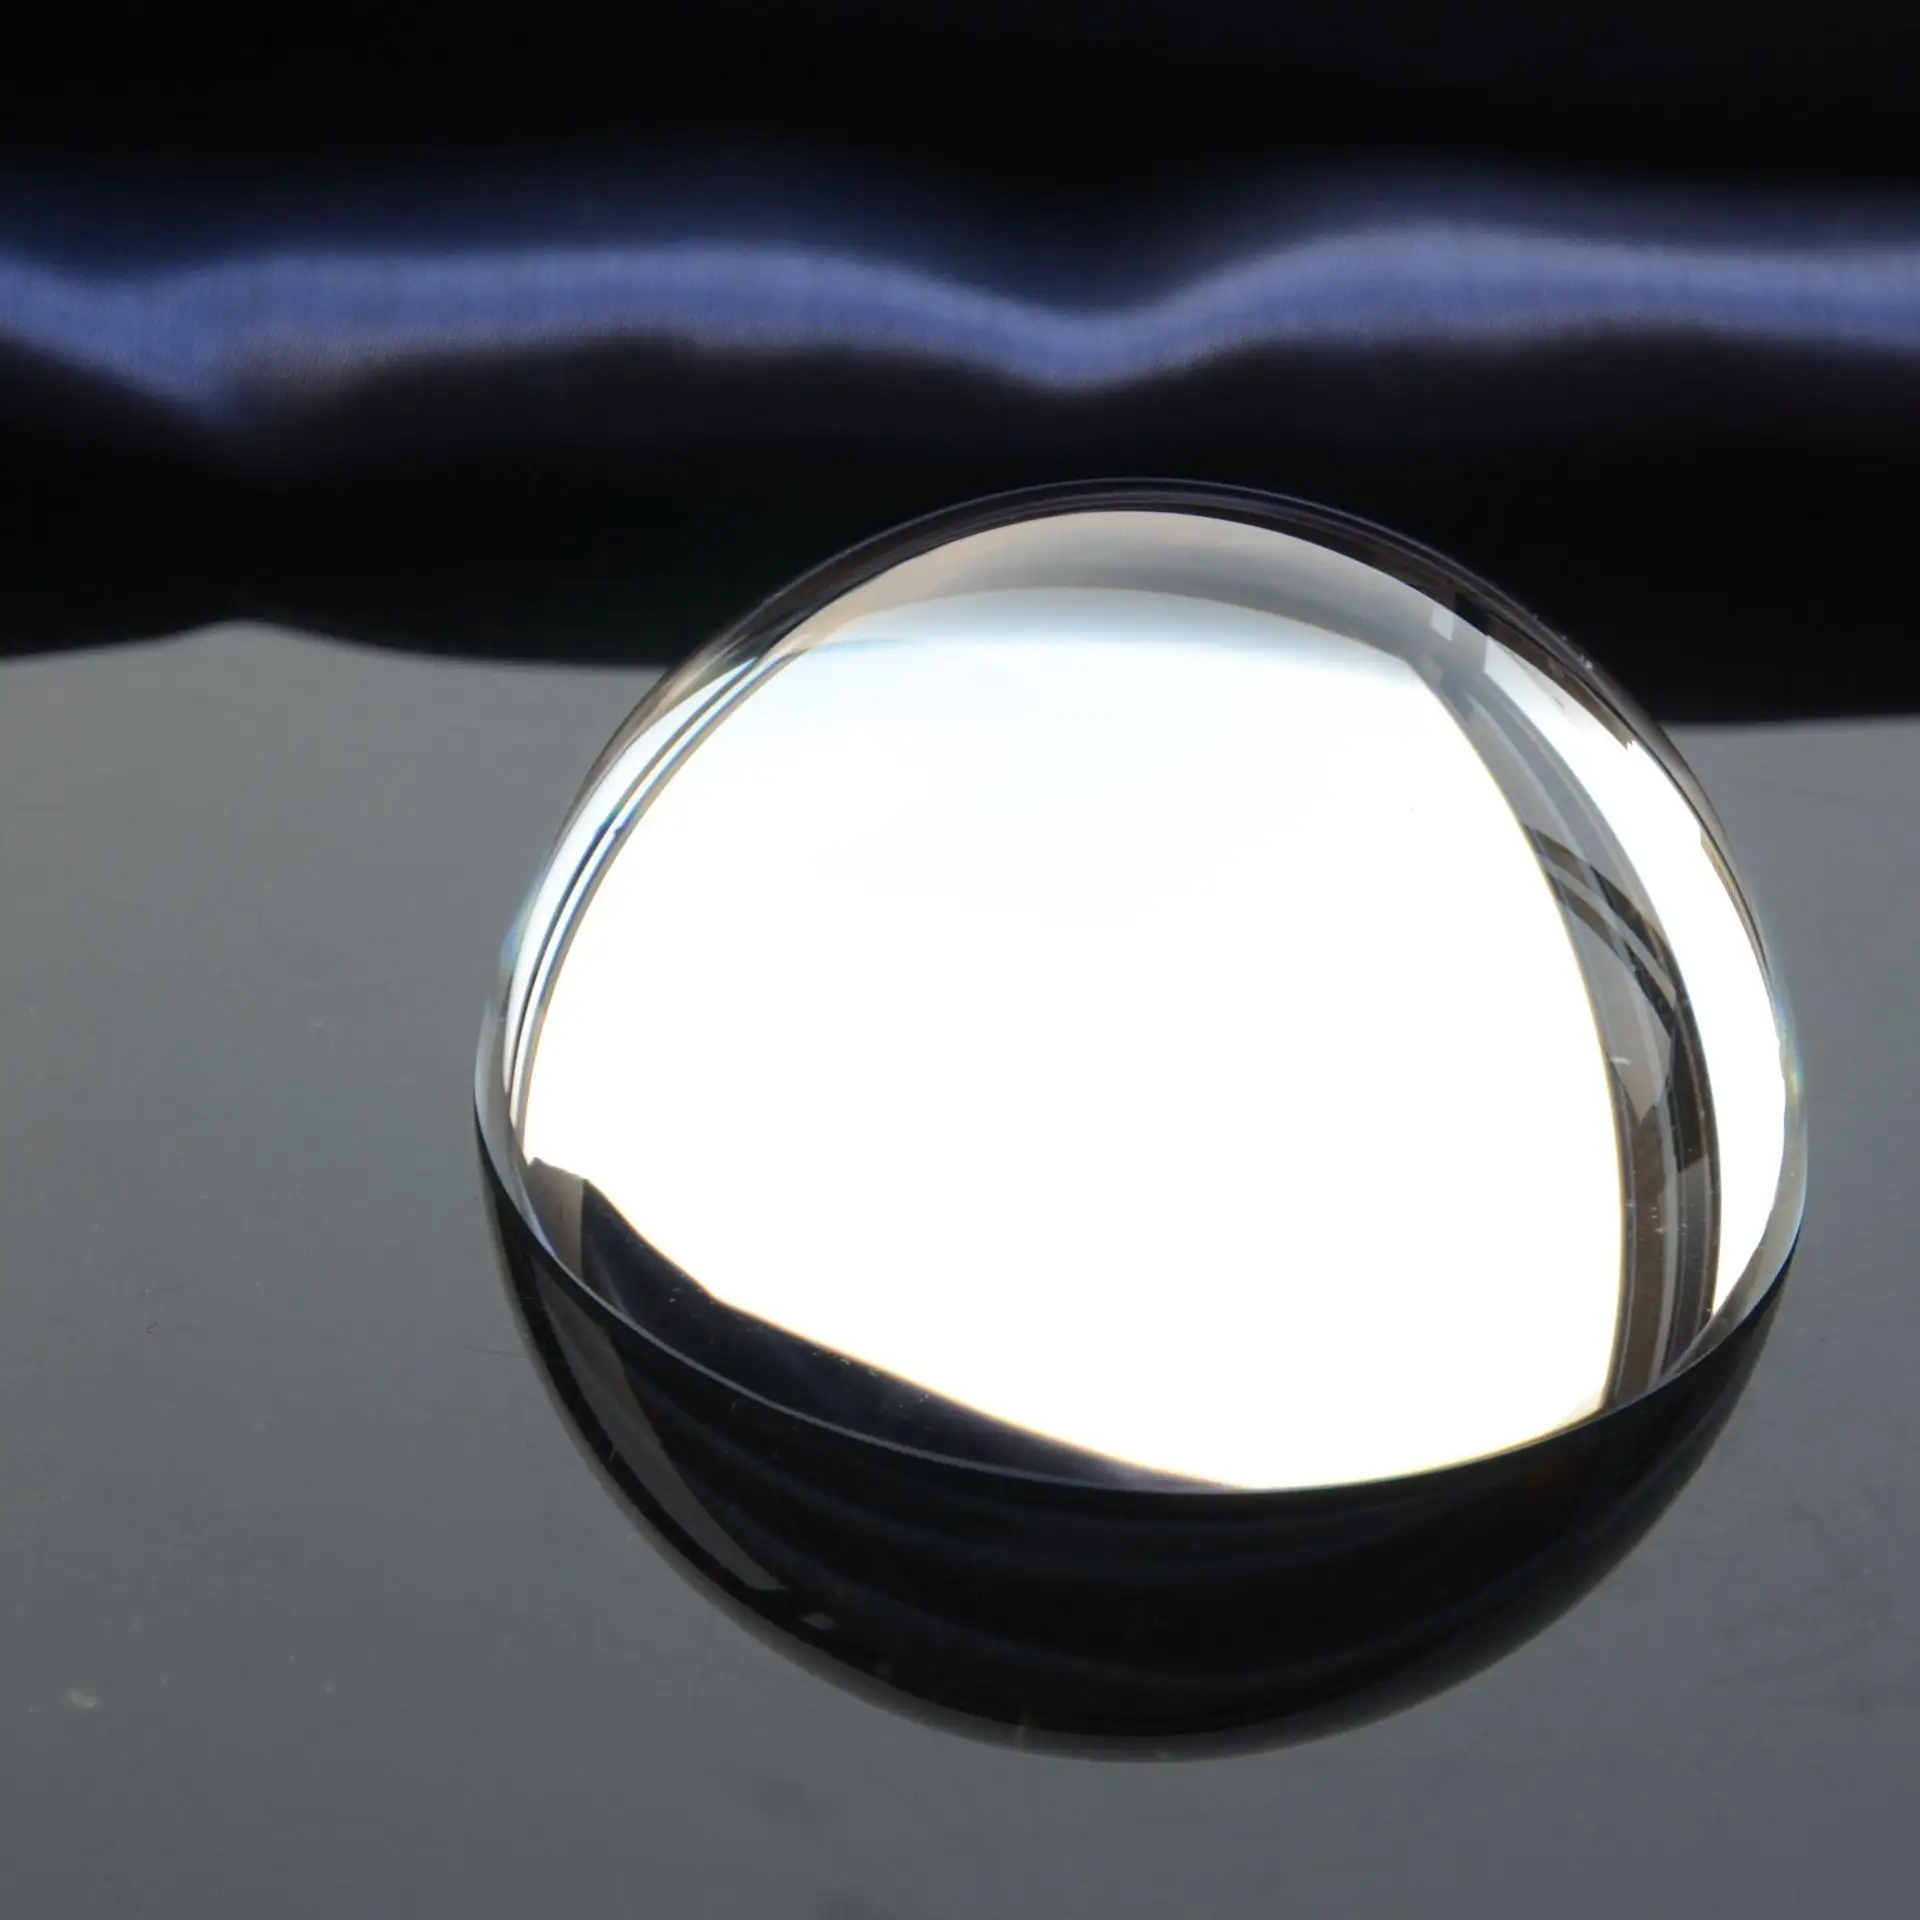 在桌子上没有阴影的玻璃球 其实这个玻璃球也是渲染的